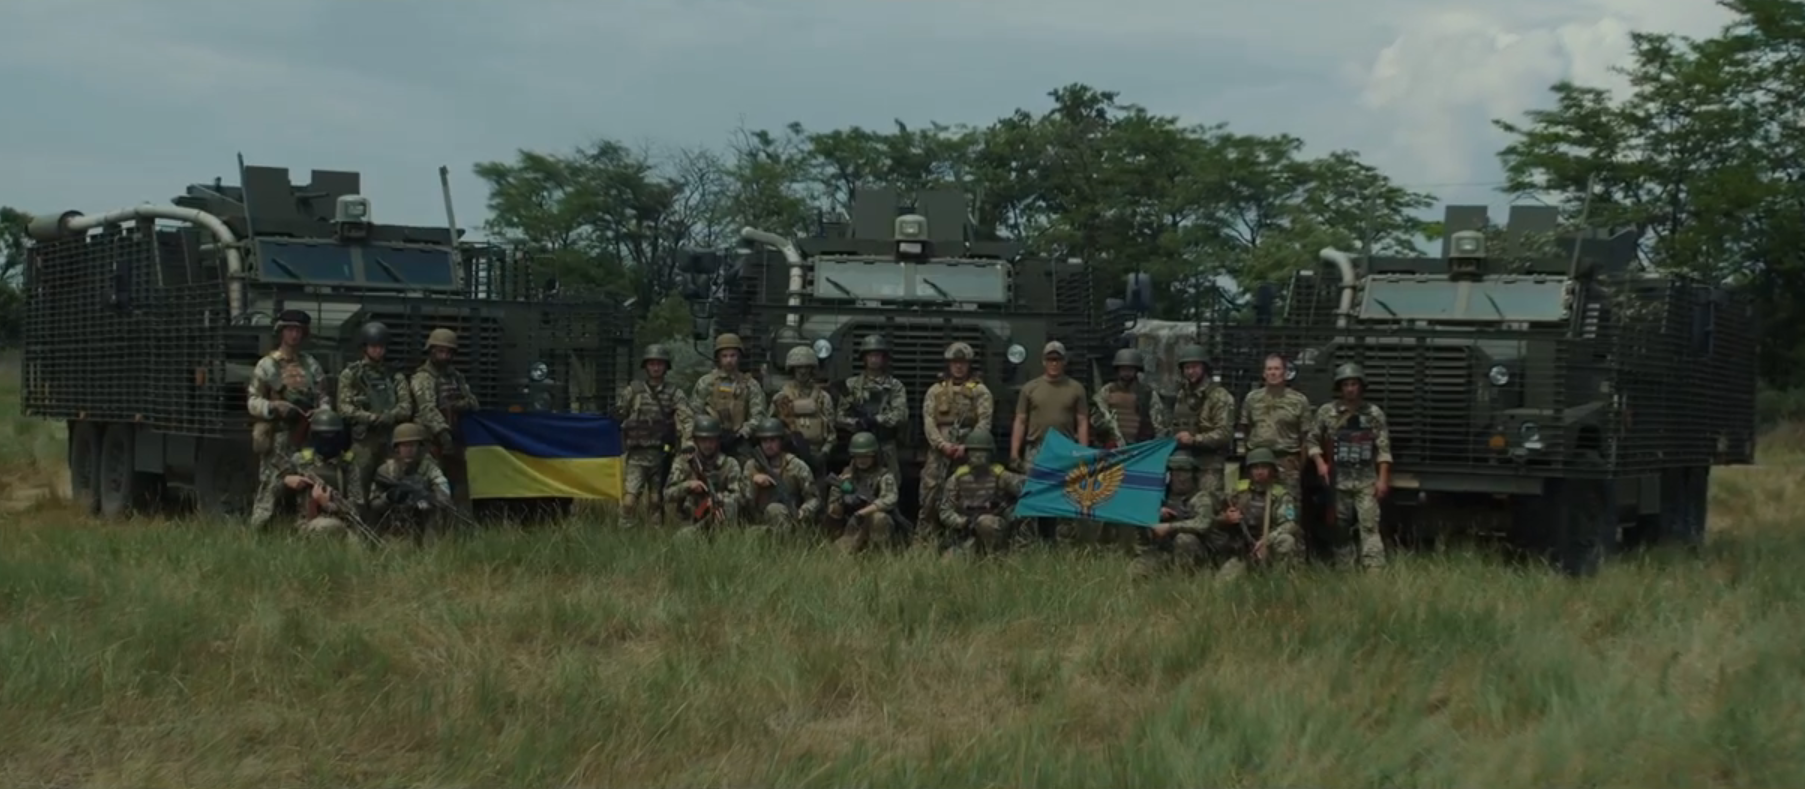 Questo non è un film su Netflix: la Marina ucraina ha pubblicato un video spettacolare con i veicoli corazzati British Mastiff